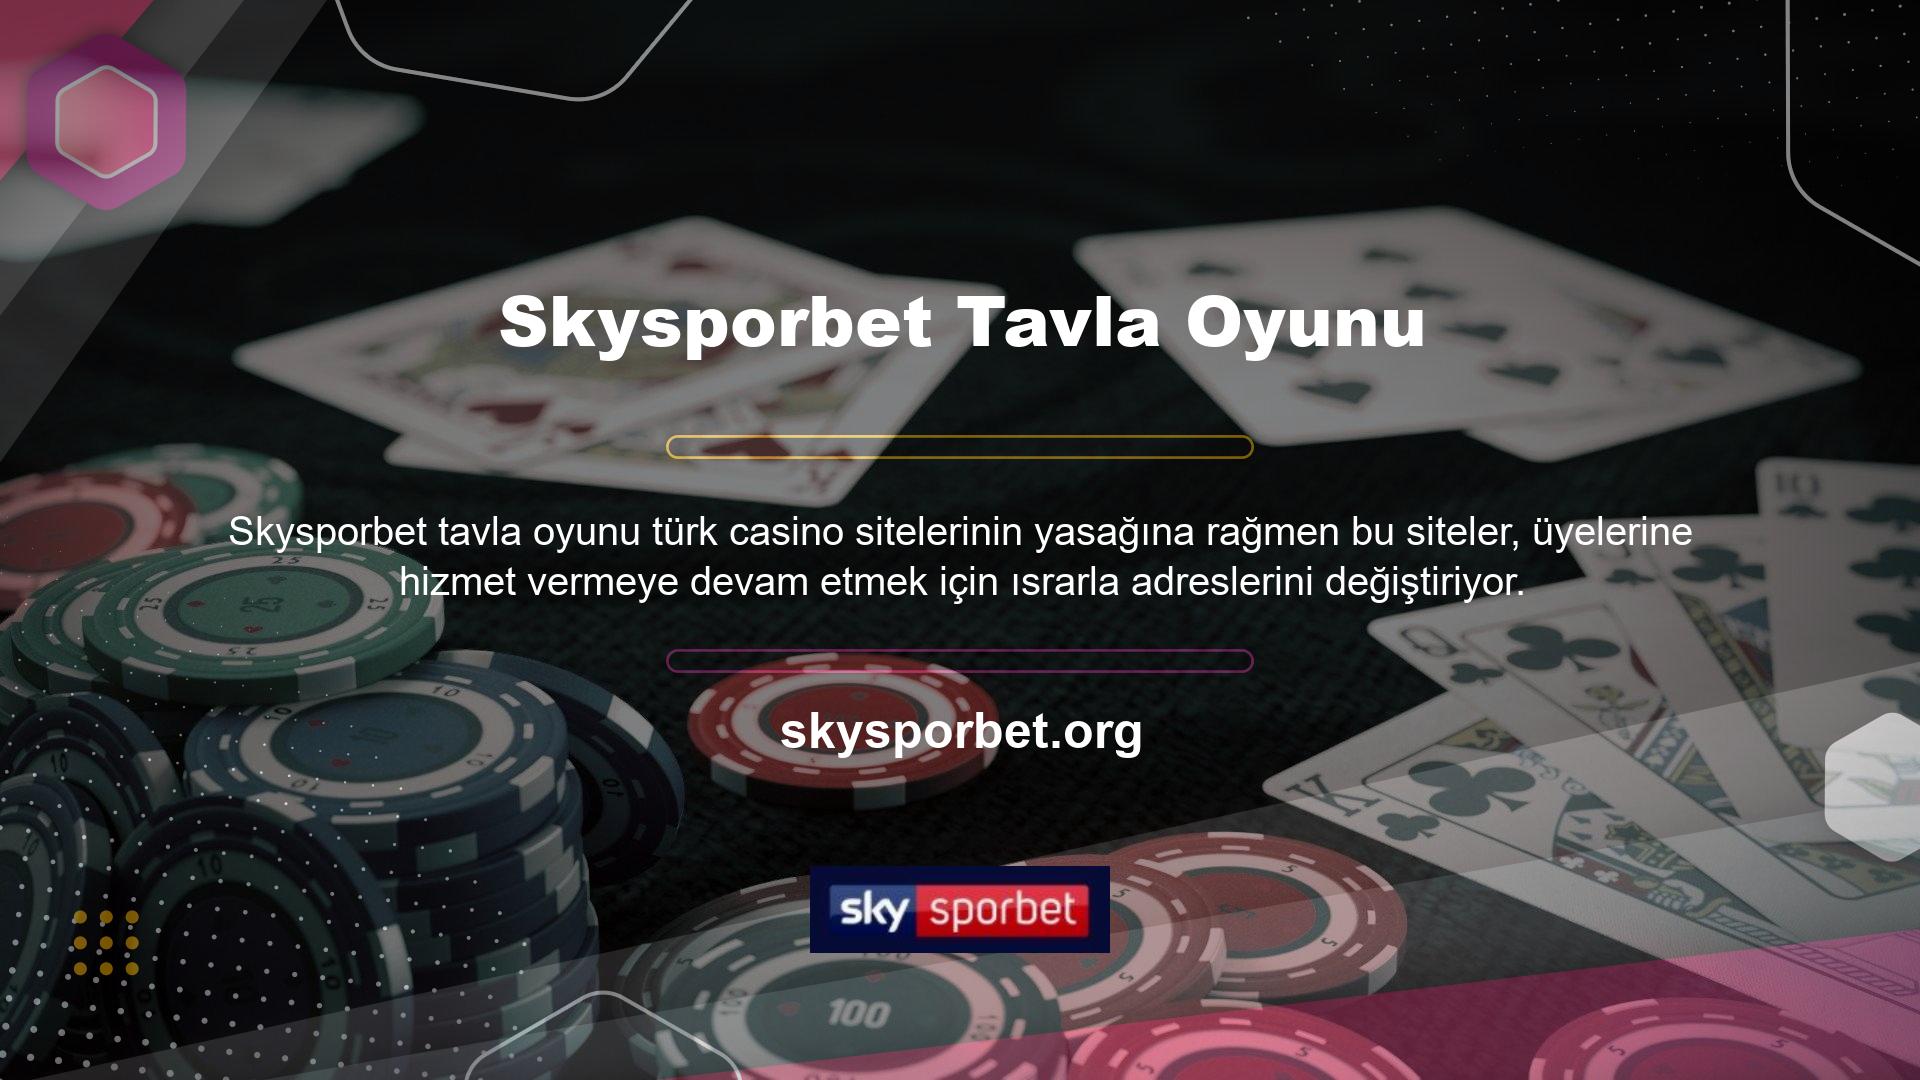 Bu alandaki uzmanlığı ve güvenilir hizmetiyle bilinen bir şirket olan Skysporbet Türkiye'de yasal bir varlığı bulunmamaktadır ve hizmetlerini ziyaret ettikten sonra sıklıkla adres değiştirmektedir